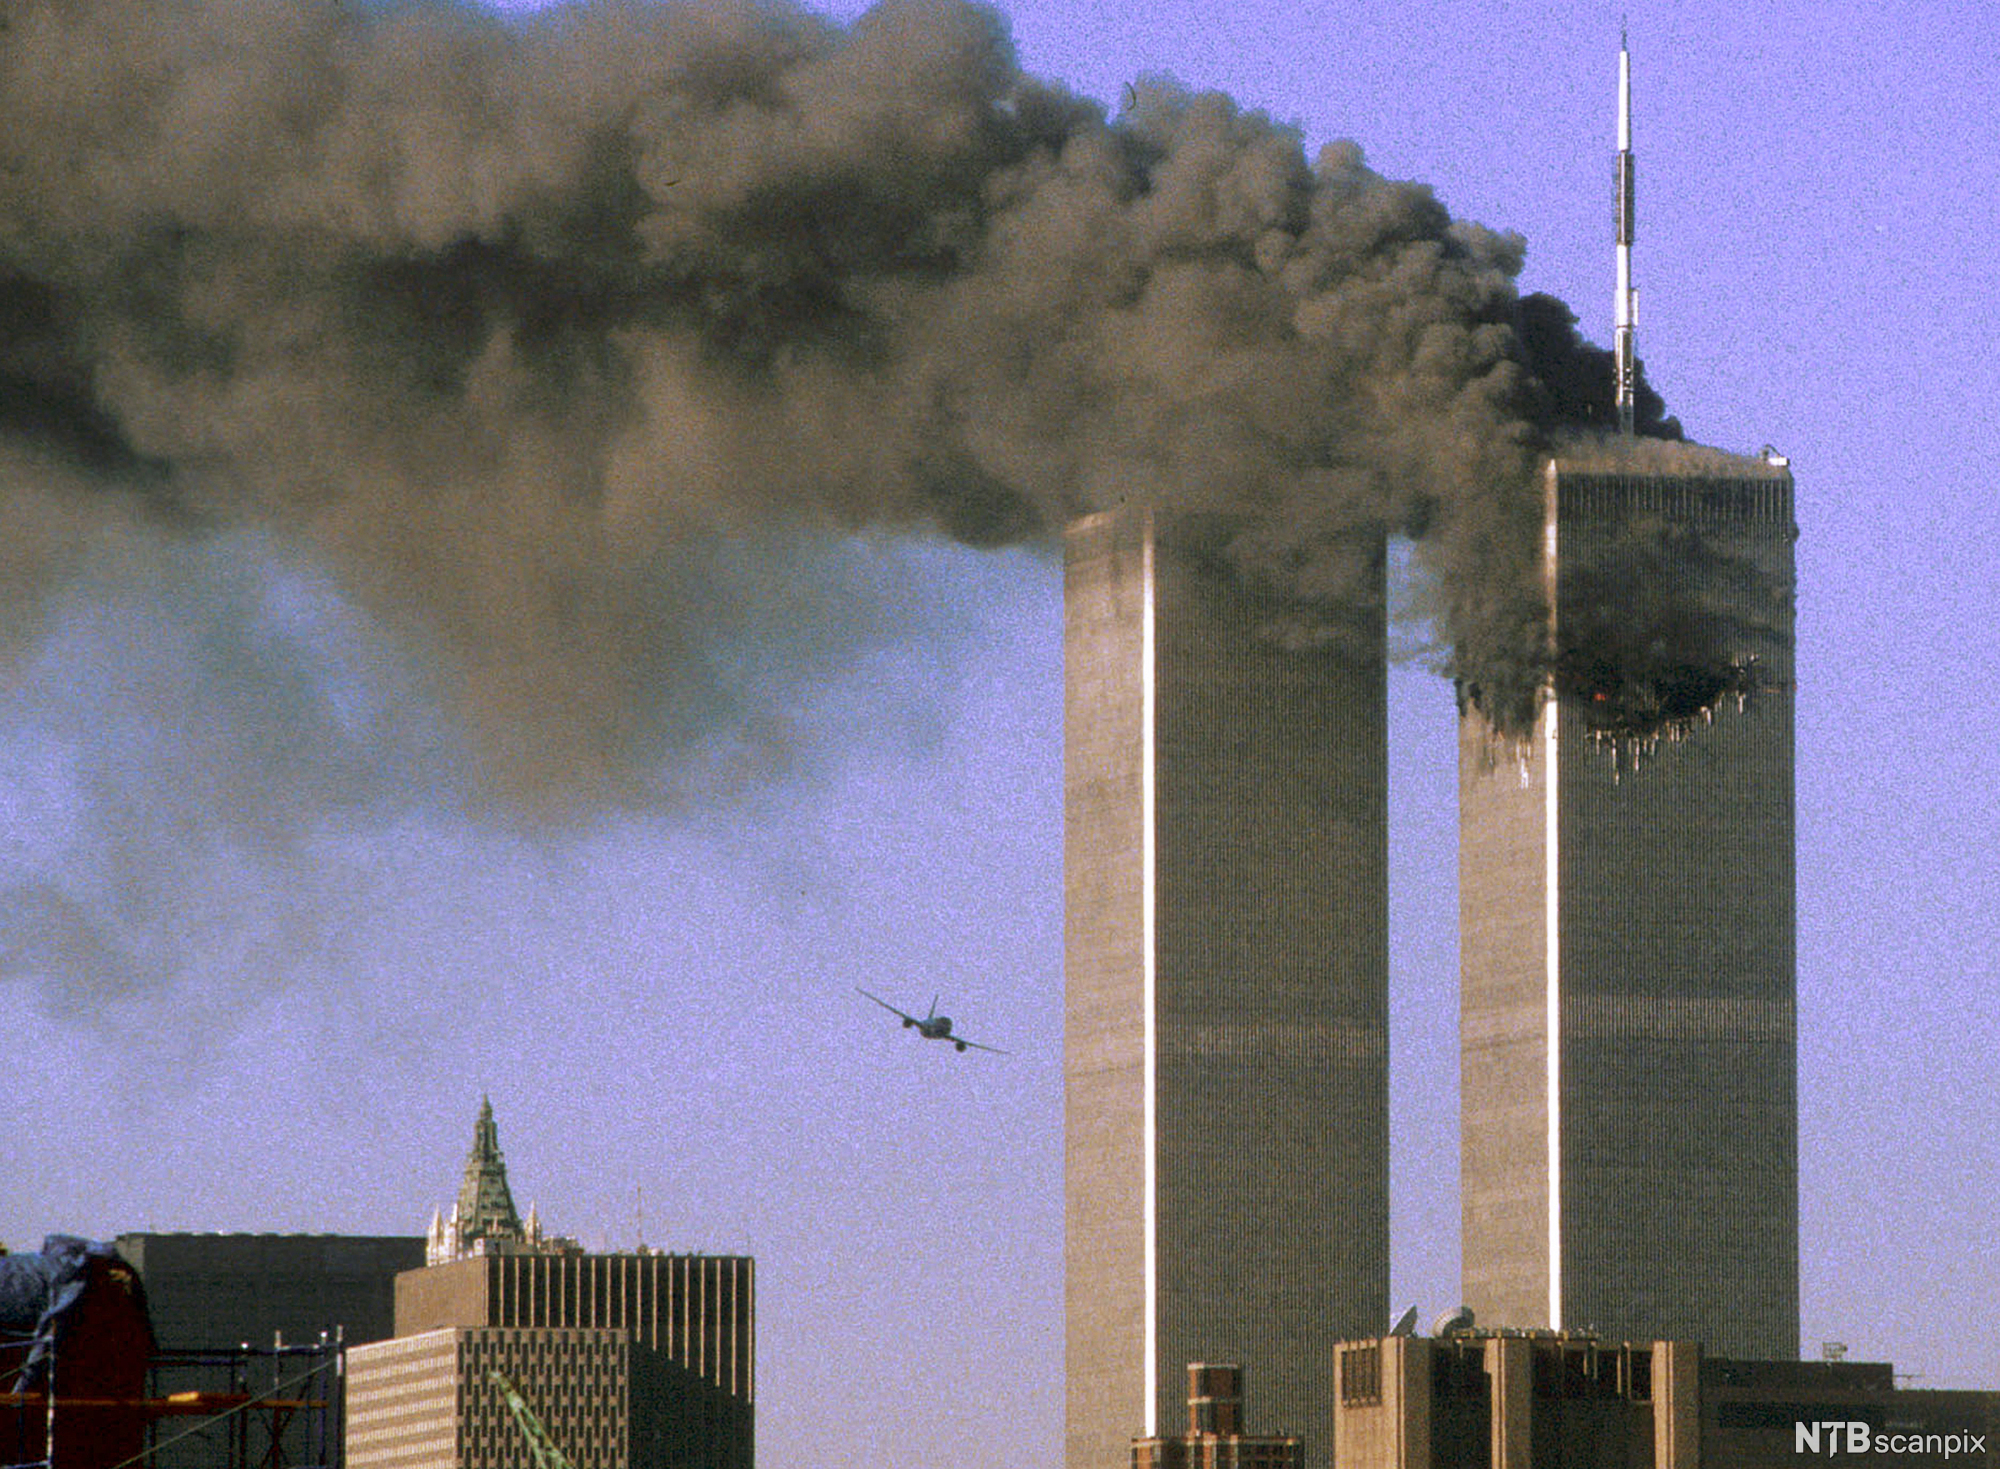 Et fly er på vei til å krasje inn i World Trade Center. Foto.